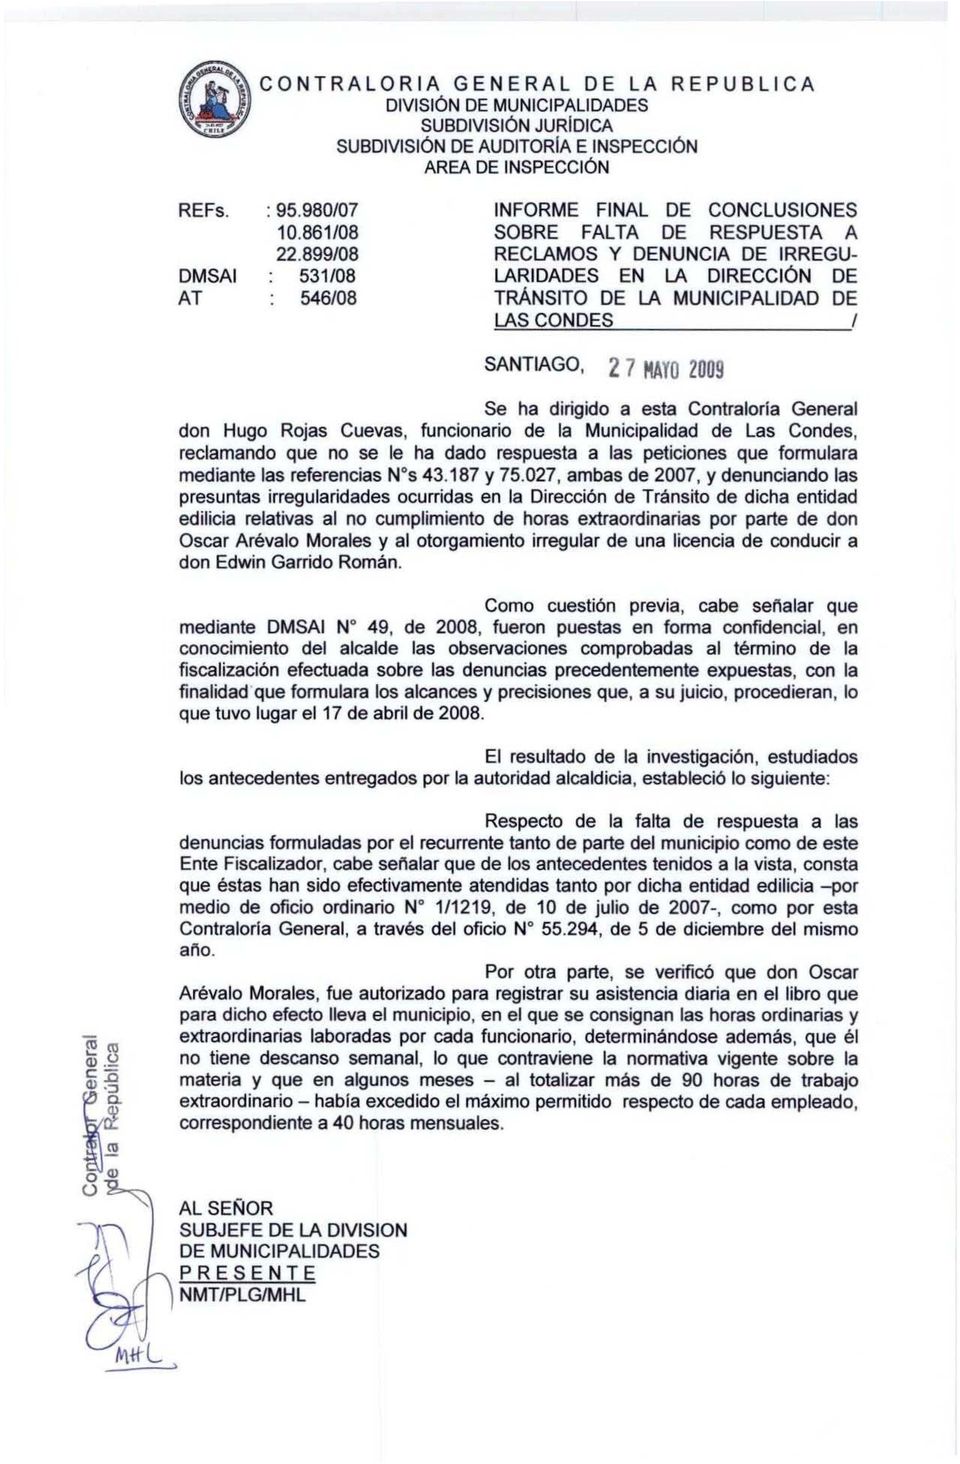 SANTIAGO, 2 7 HAYO 2009 Se ha dirigido a esta Contraloria General don Hugo Rojas Cuevas, funcionario de la Municipalidad de Las Condes, reclamando que no se le ha dado respuesta a las peticiones que